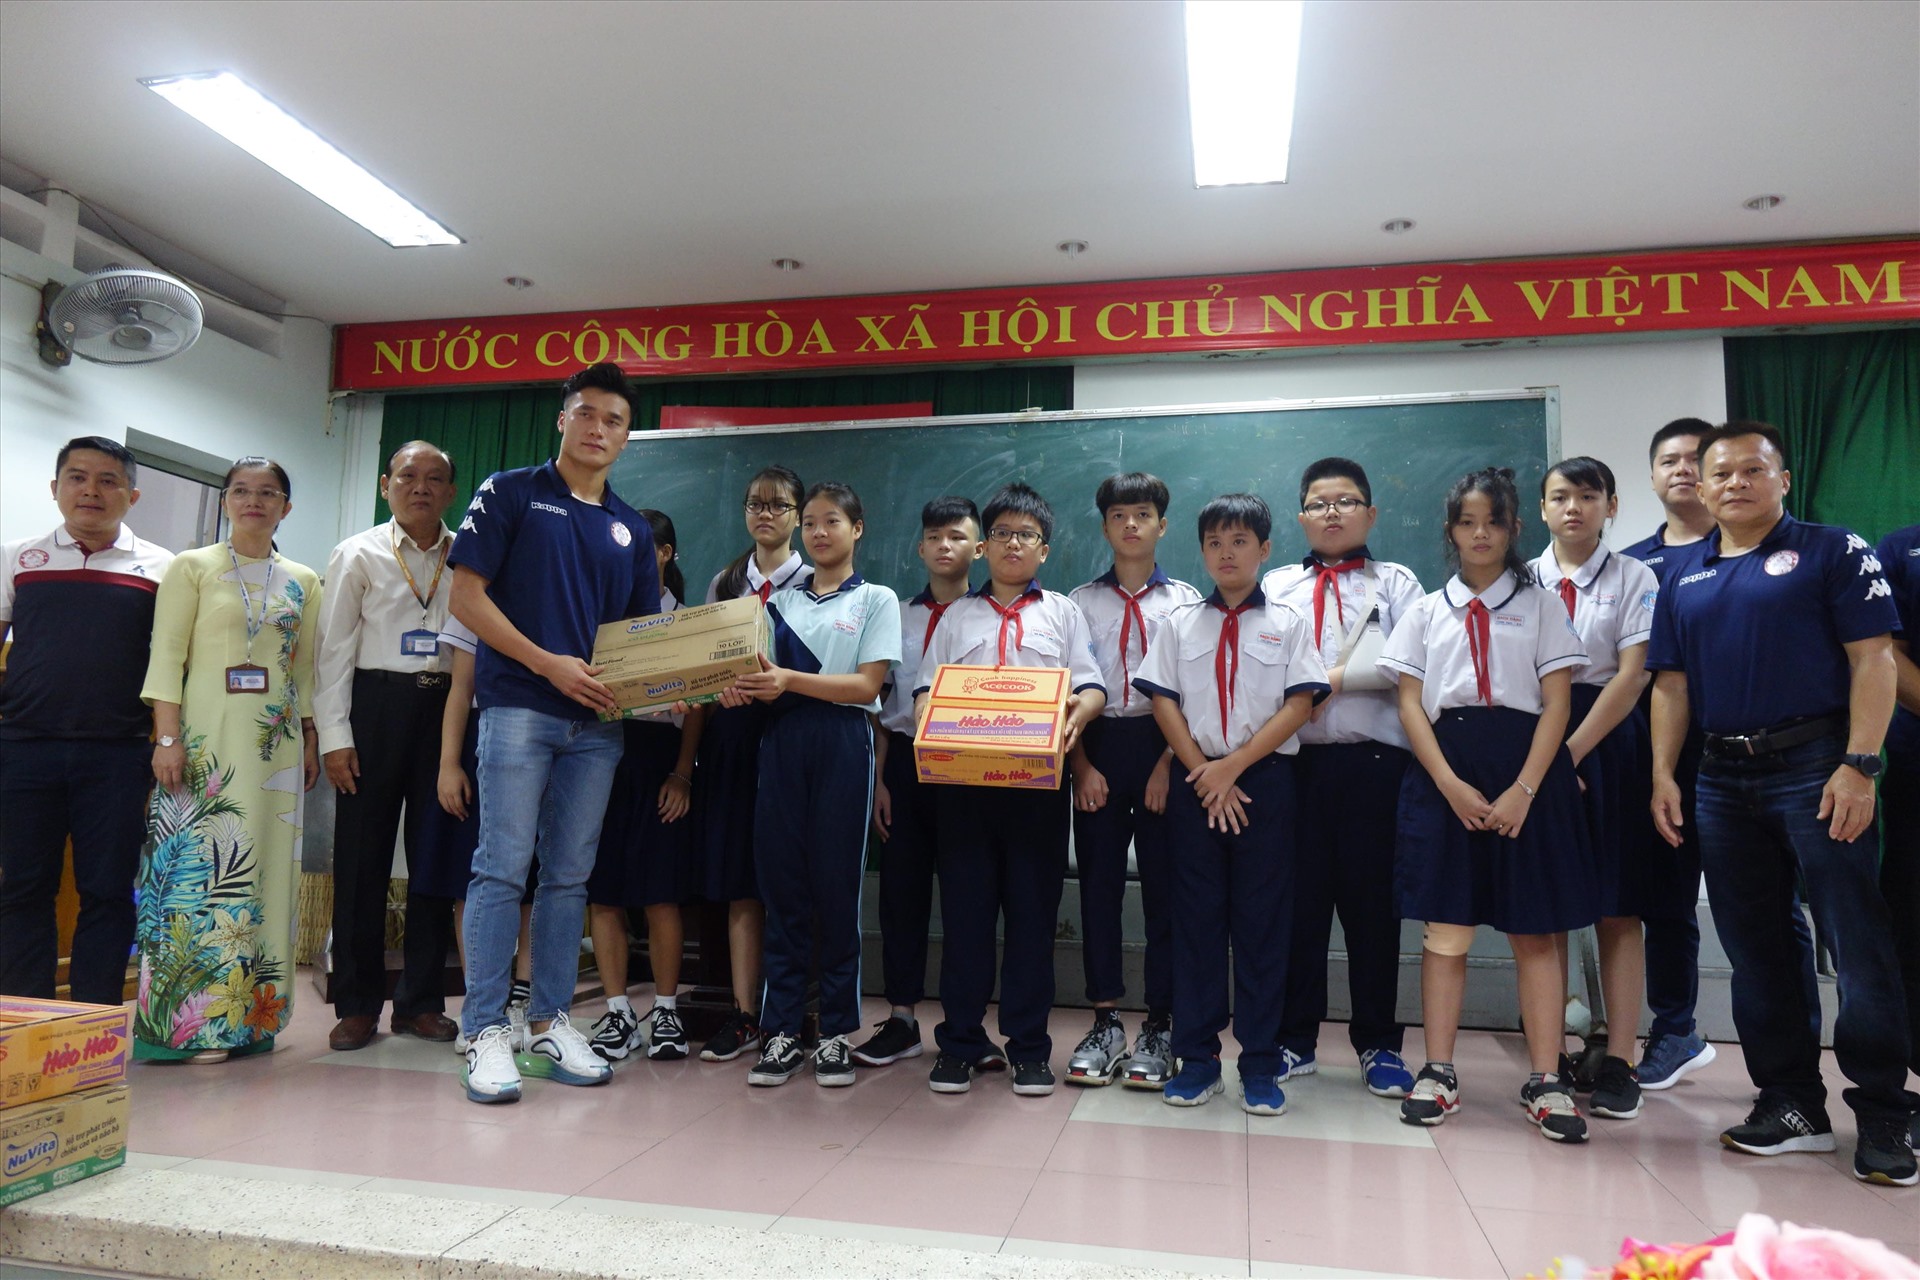 Bùi Tiến Dũng cùng đội TP.HCM tặng quà cho các em học sinh trường THCS Bạch Đằng. Ảnh: Nguyễn Đăng.